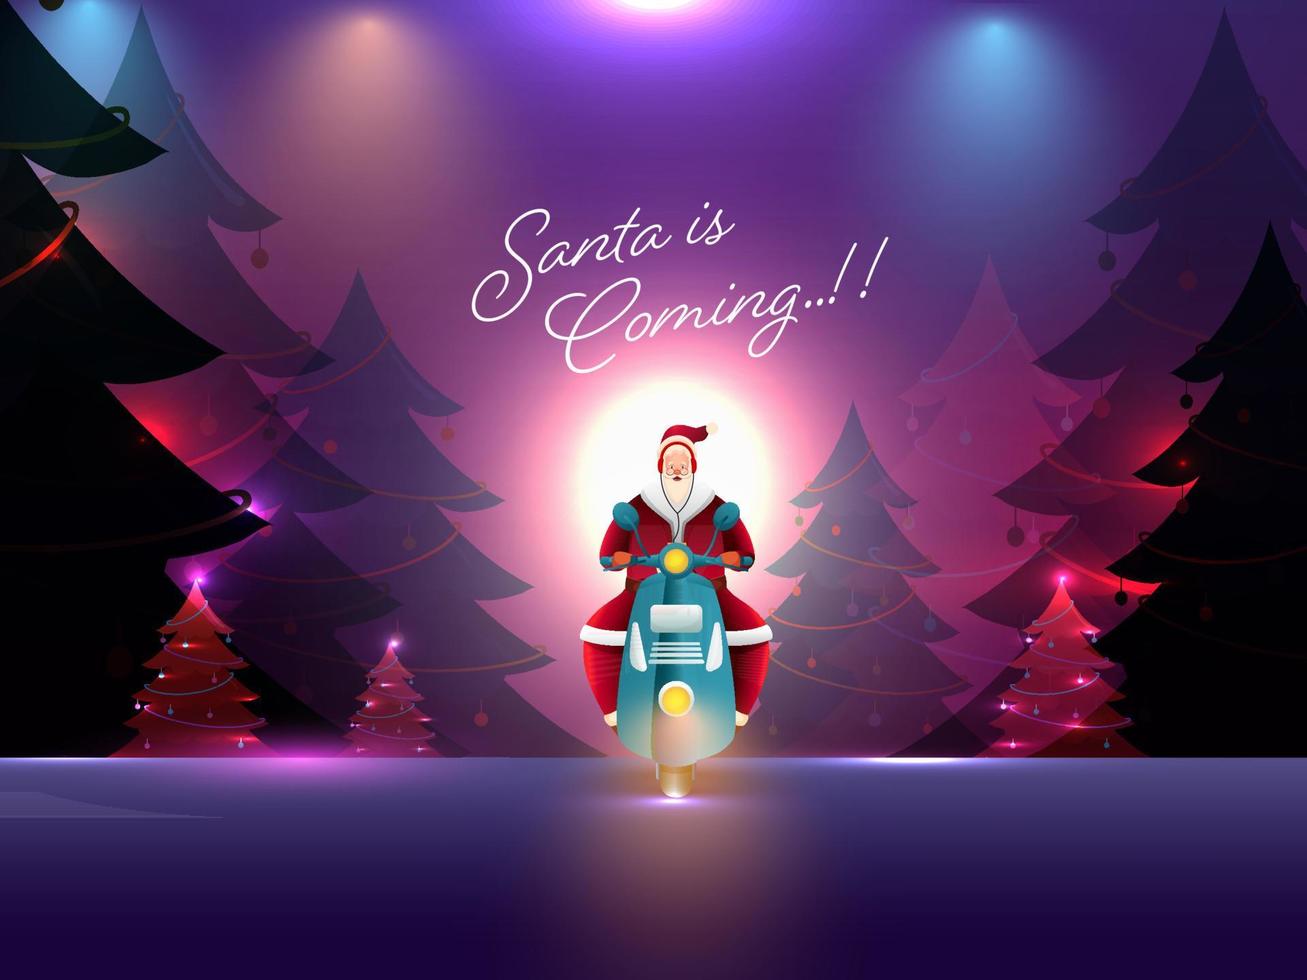 abstrakt Beleuchtung Fokus Hintergrund mit dekorativ Weihnachten Bäume, Santa claus Reiten Roller und gegeben Botschaft Santa ist Kommen. vektor